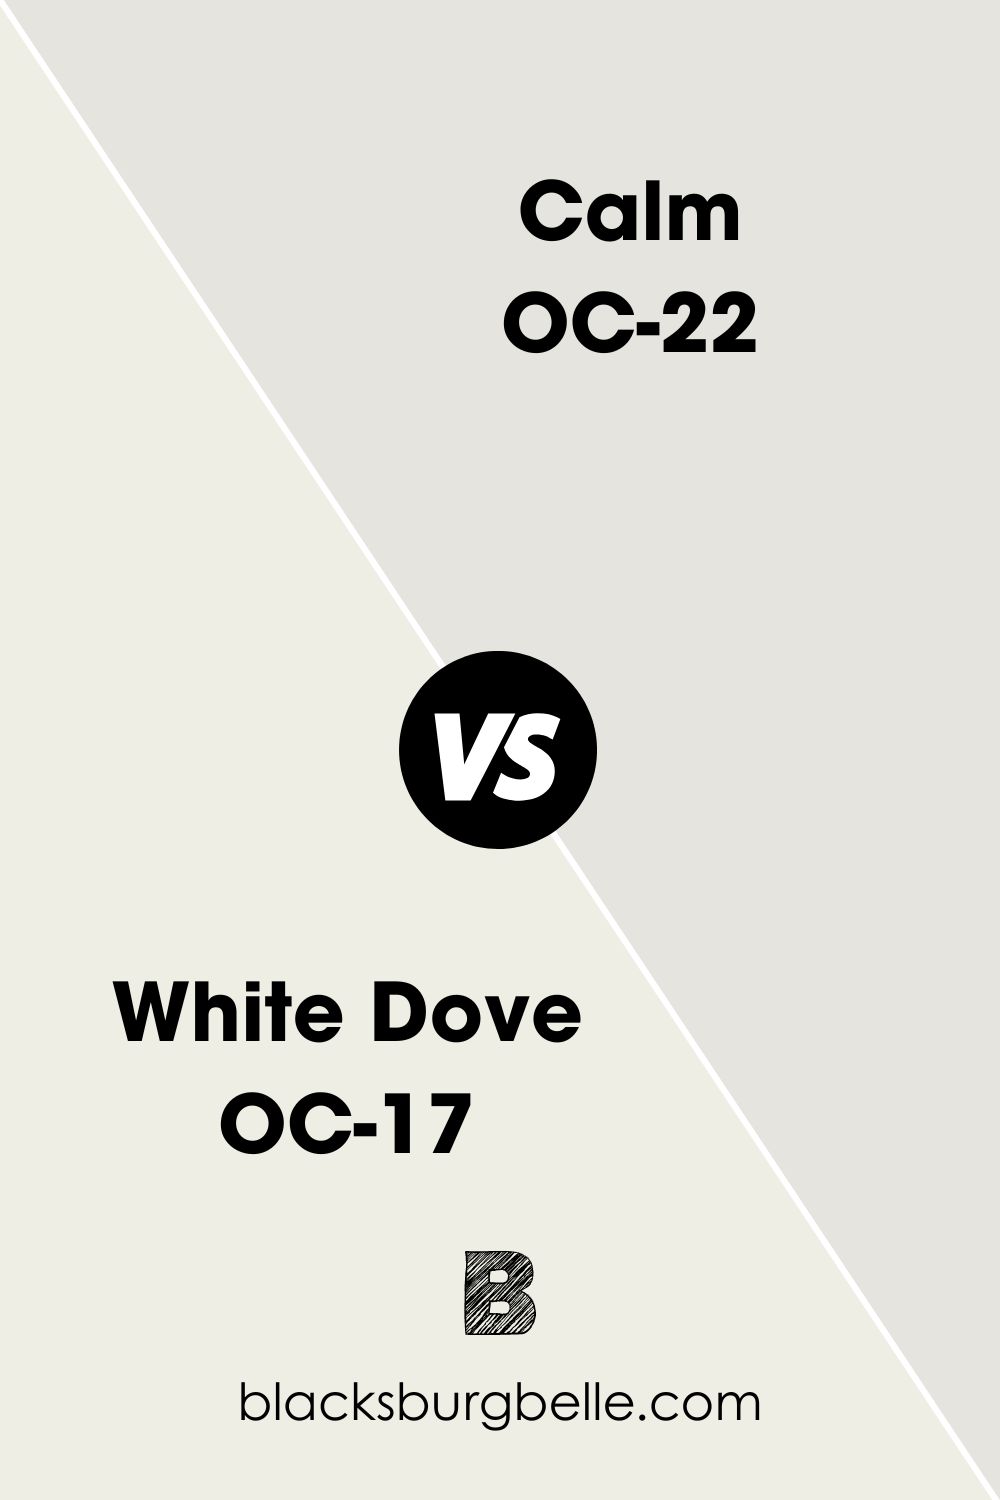 White Dove OC-17